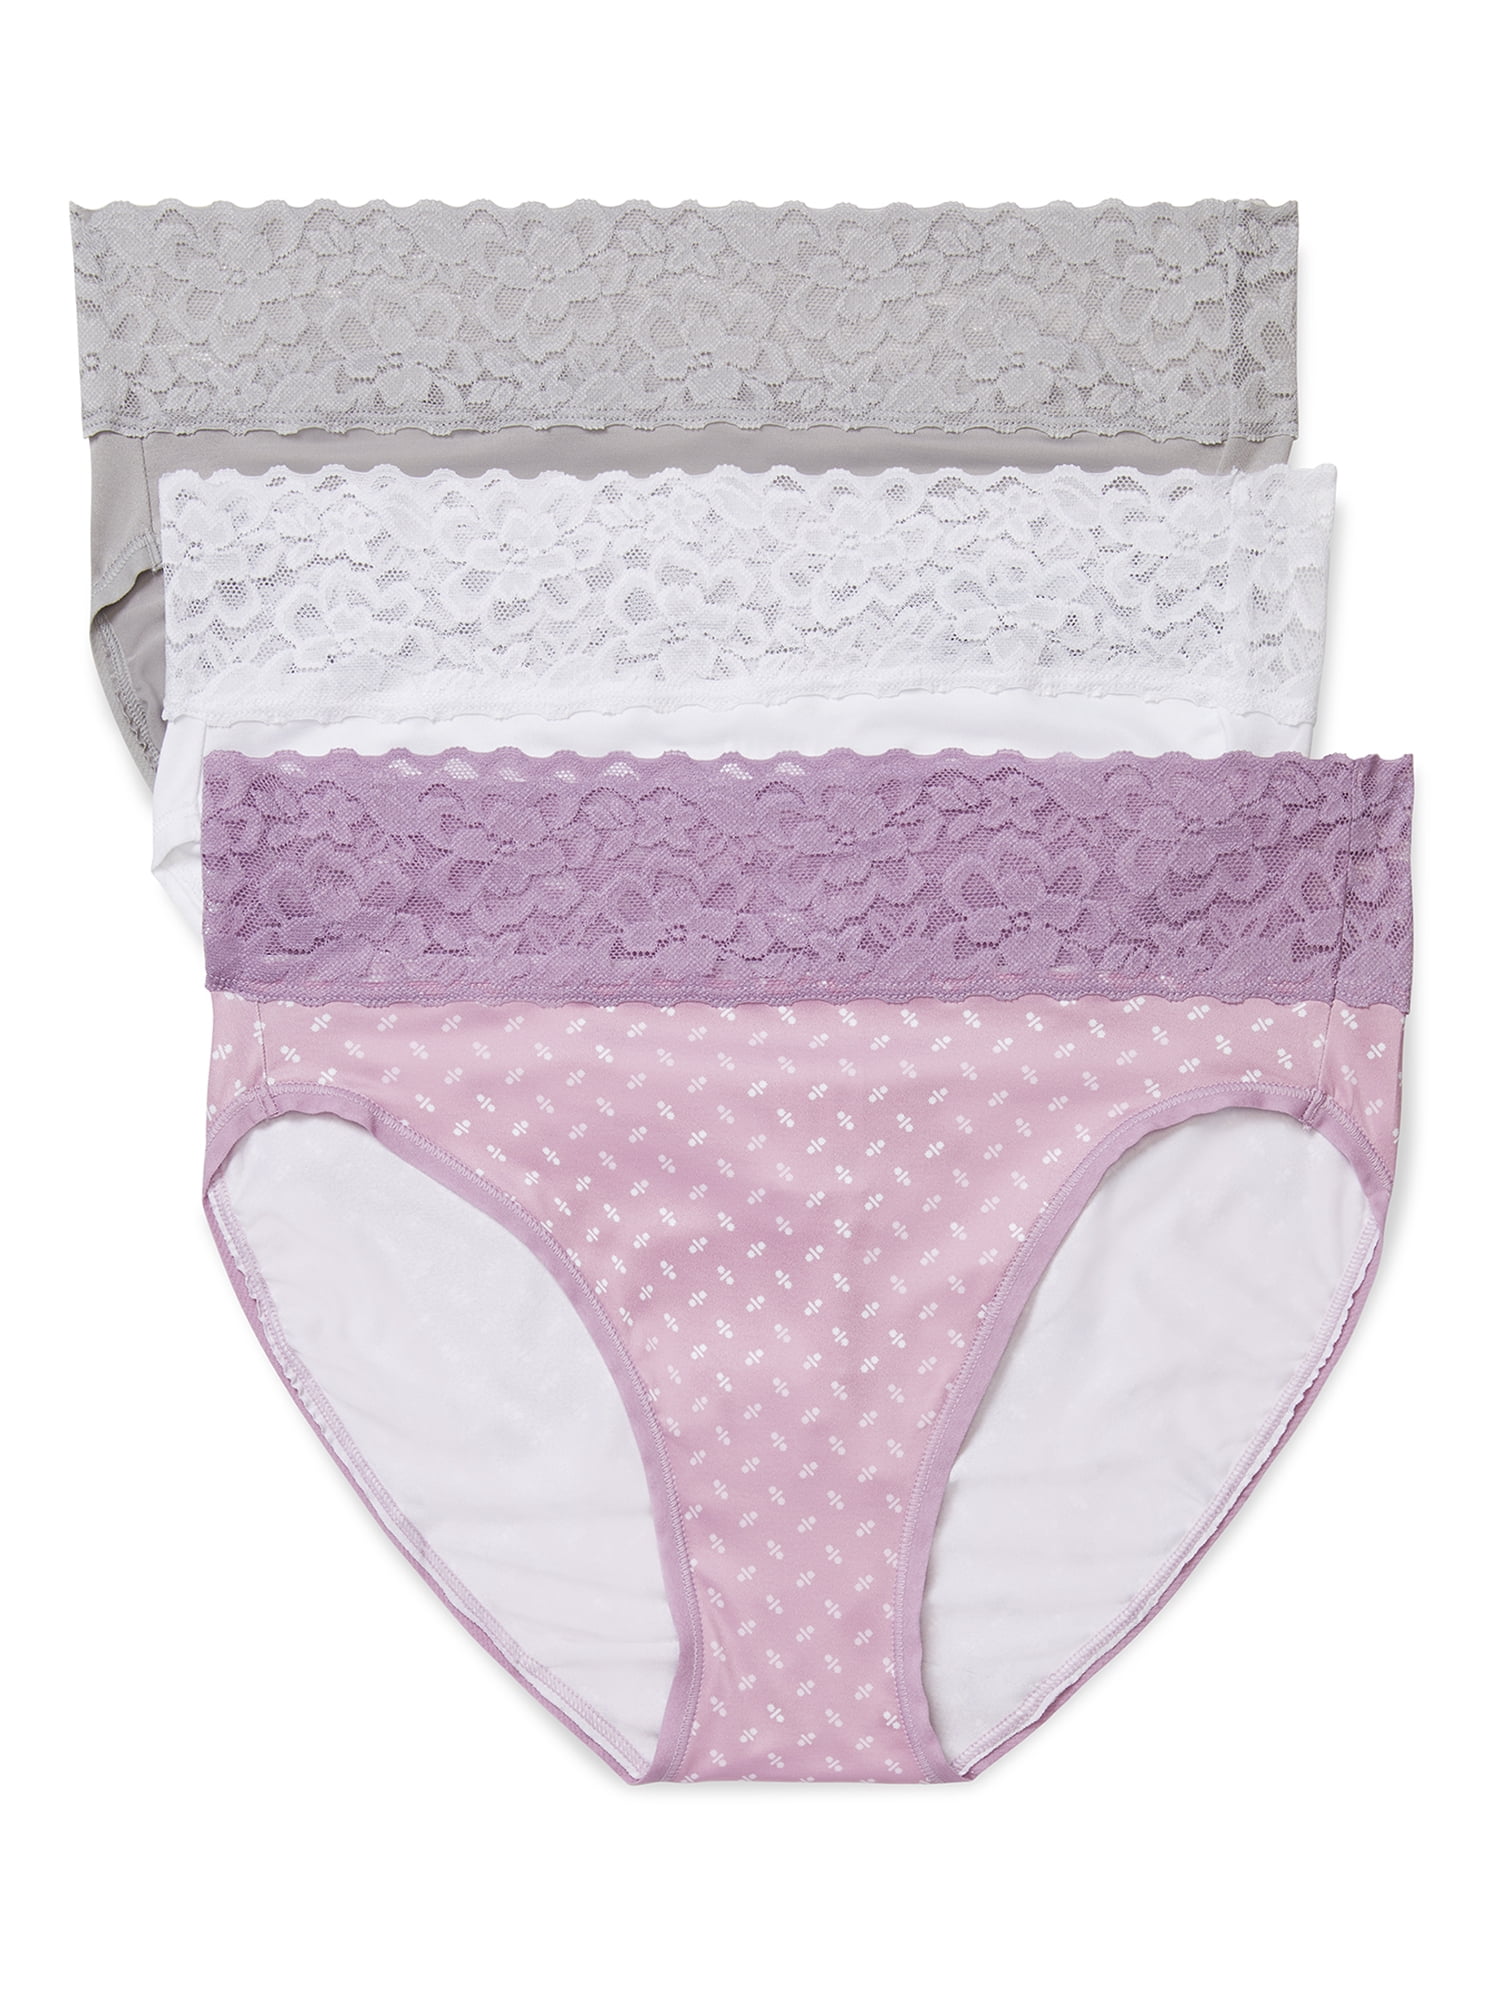 Hanes Women's Stretch Cotton Bikini Underwear, 10-Pack Assorted 5